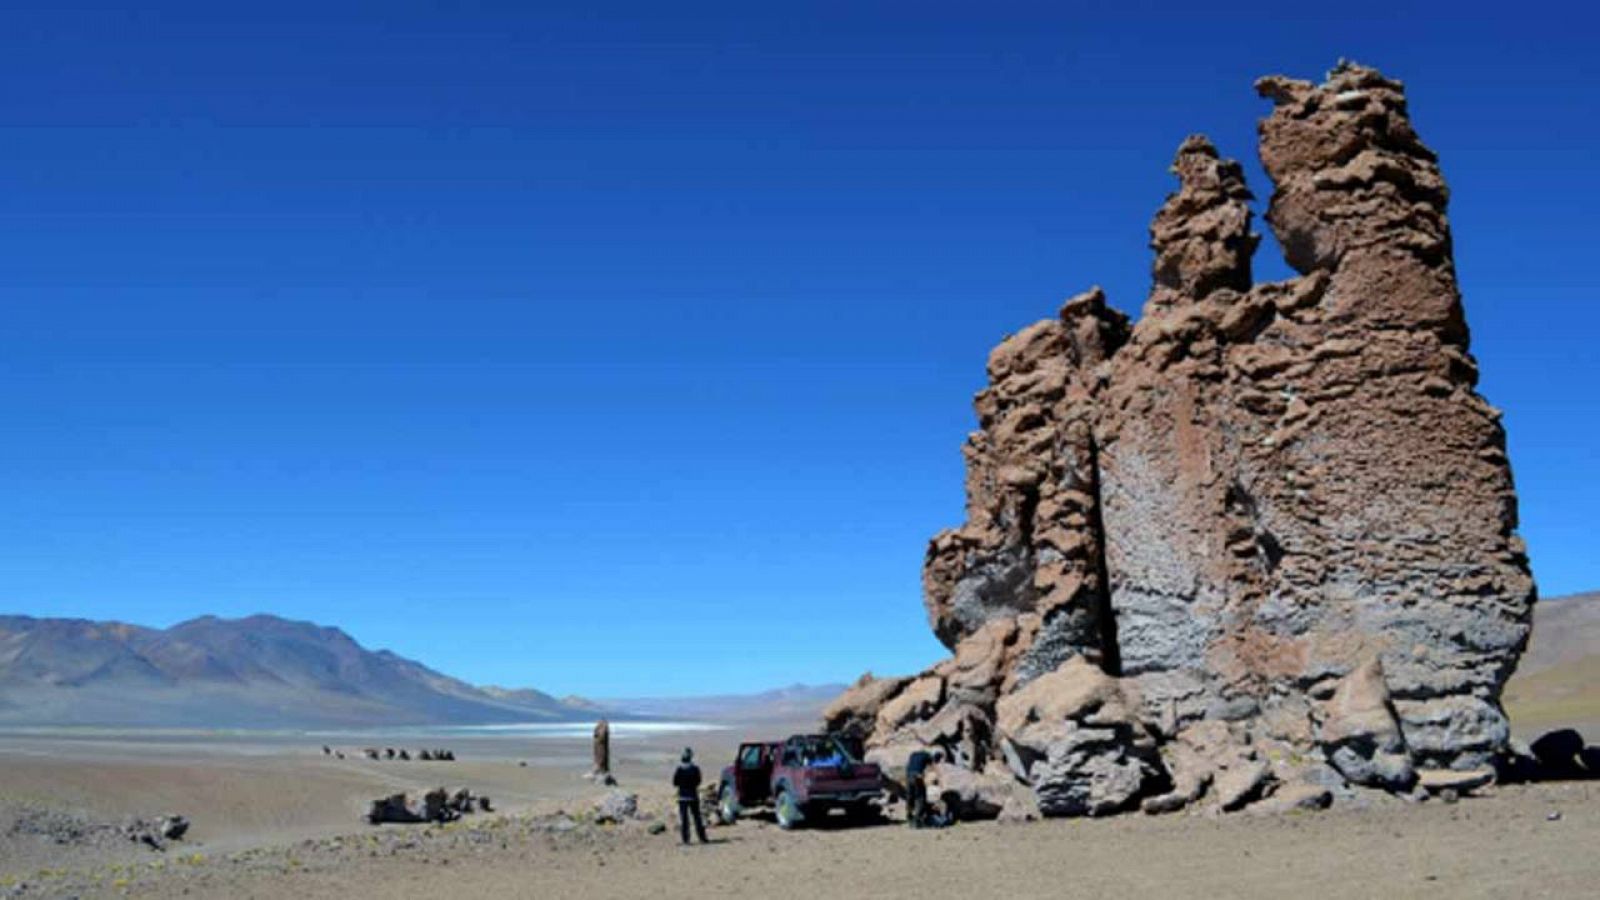 El grupo de investigación ECOGEO lleva más de diez años buscando vida microbiana en el desierto de Atacama